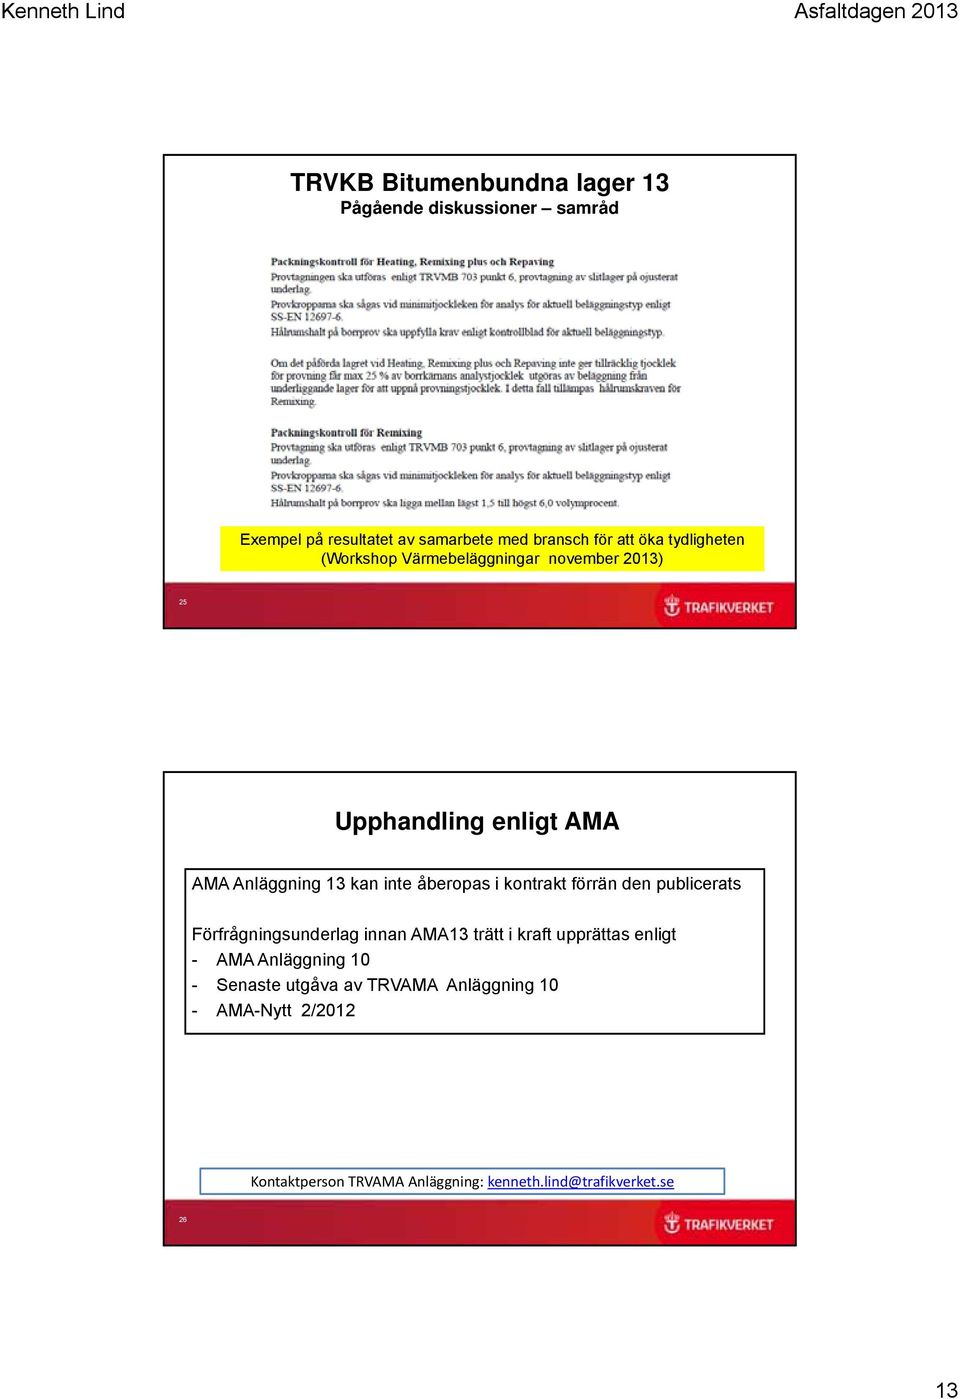 publicerats Förfrågningsunderlag innan AMA13 trätt i kraft upprättas enligt - AMA Anläggning 10 -